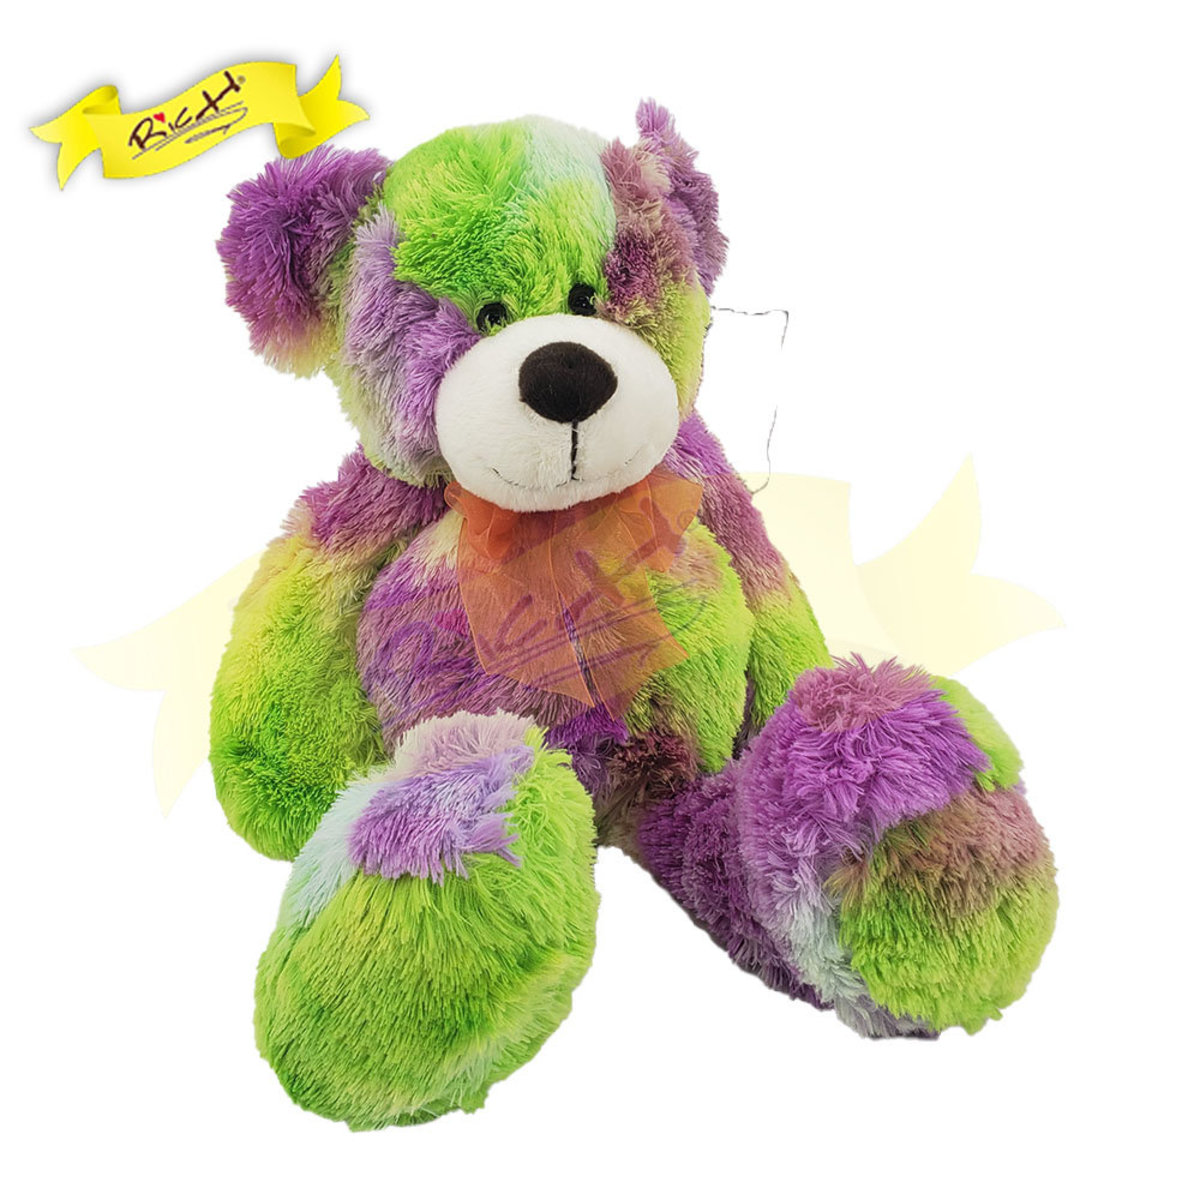 糖果系列熊公仔Teddy Bear 可愛紫綠色 (35cm) - C17806M